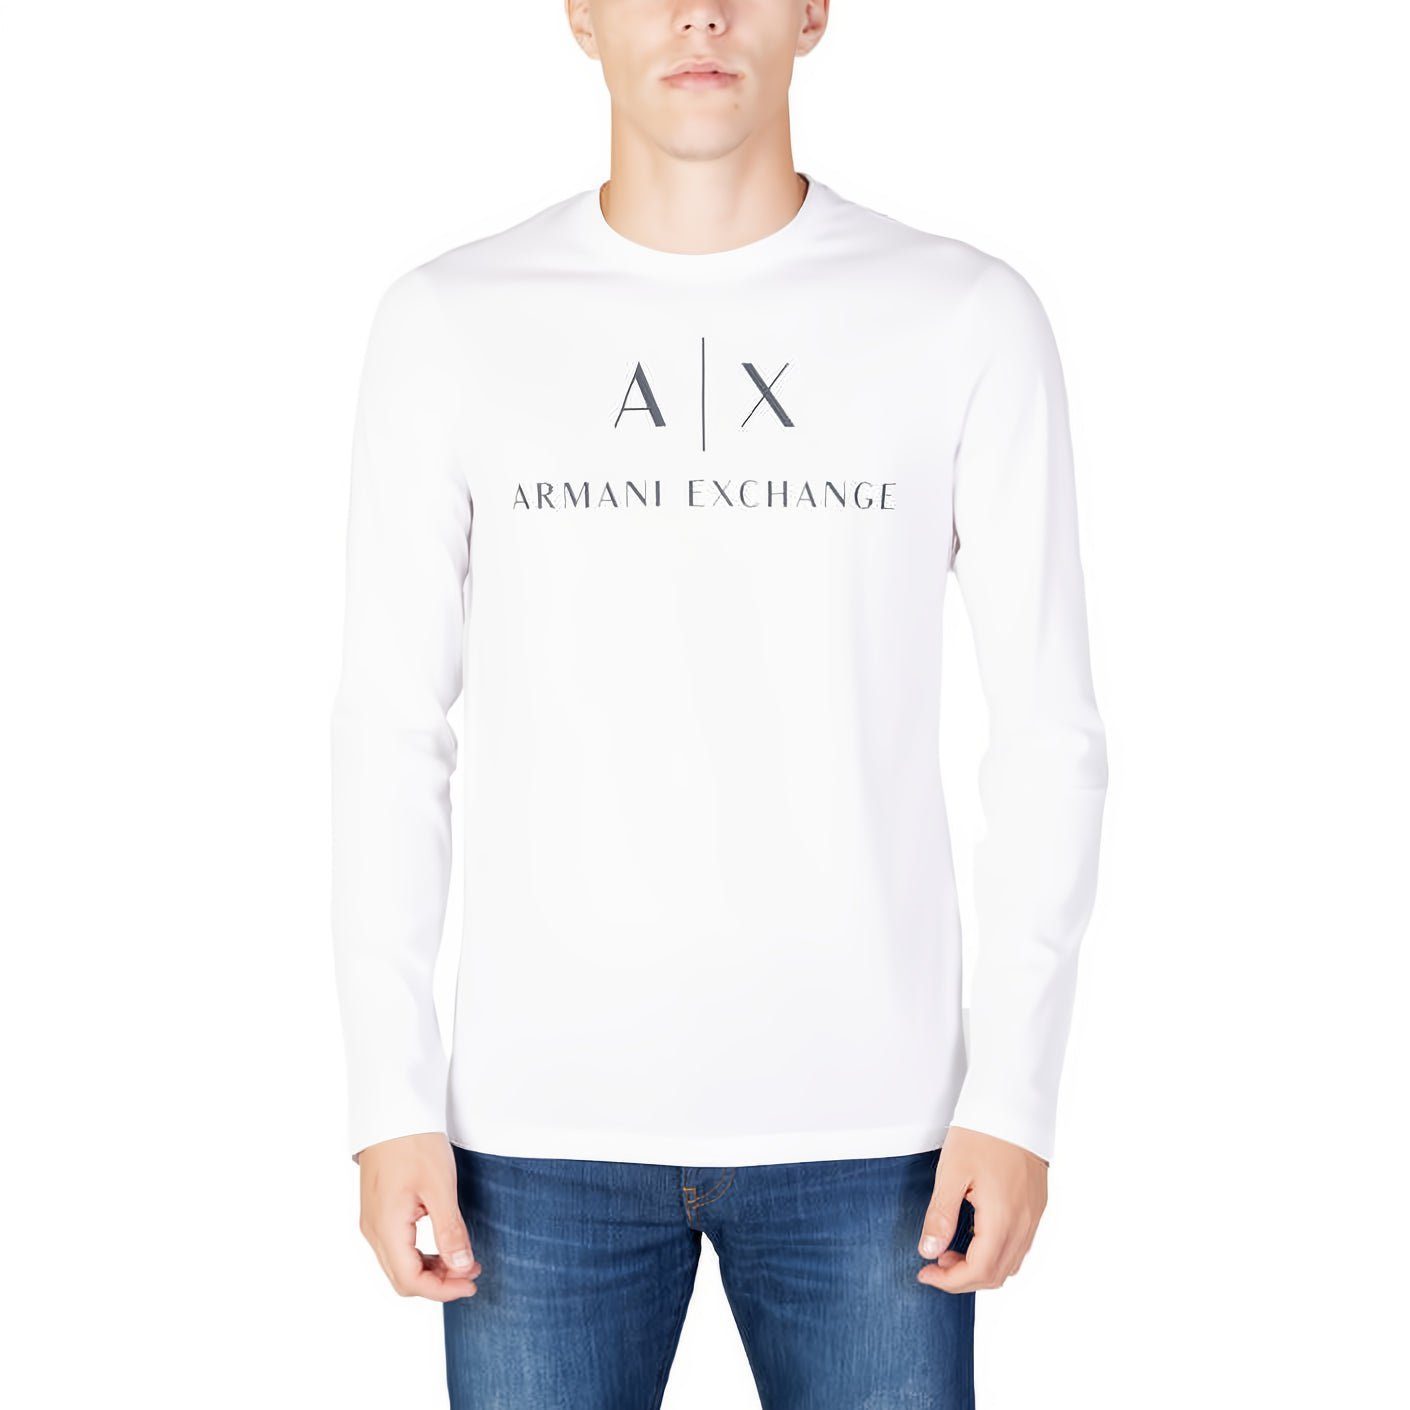 ARMANI EXCHANGE T-Shirt kurzarm, Rundhals, ein Must-Have für Ihre Kleidungskollektion! Weiß